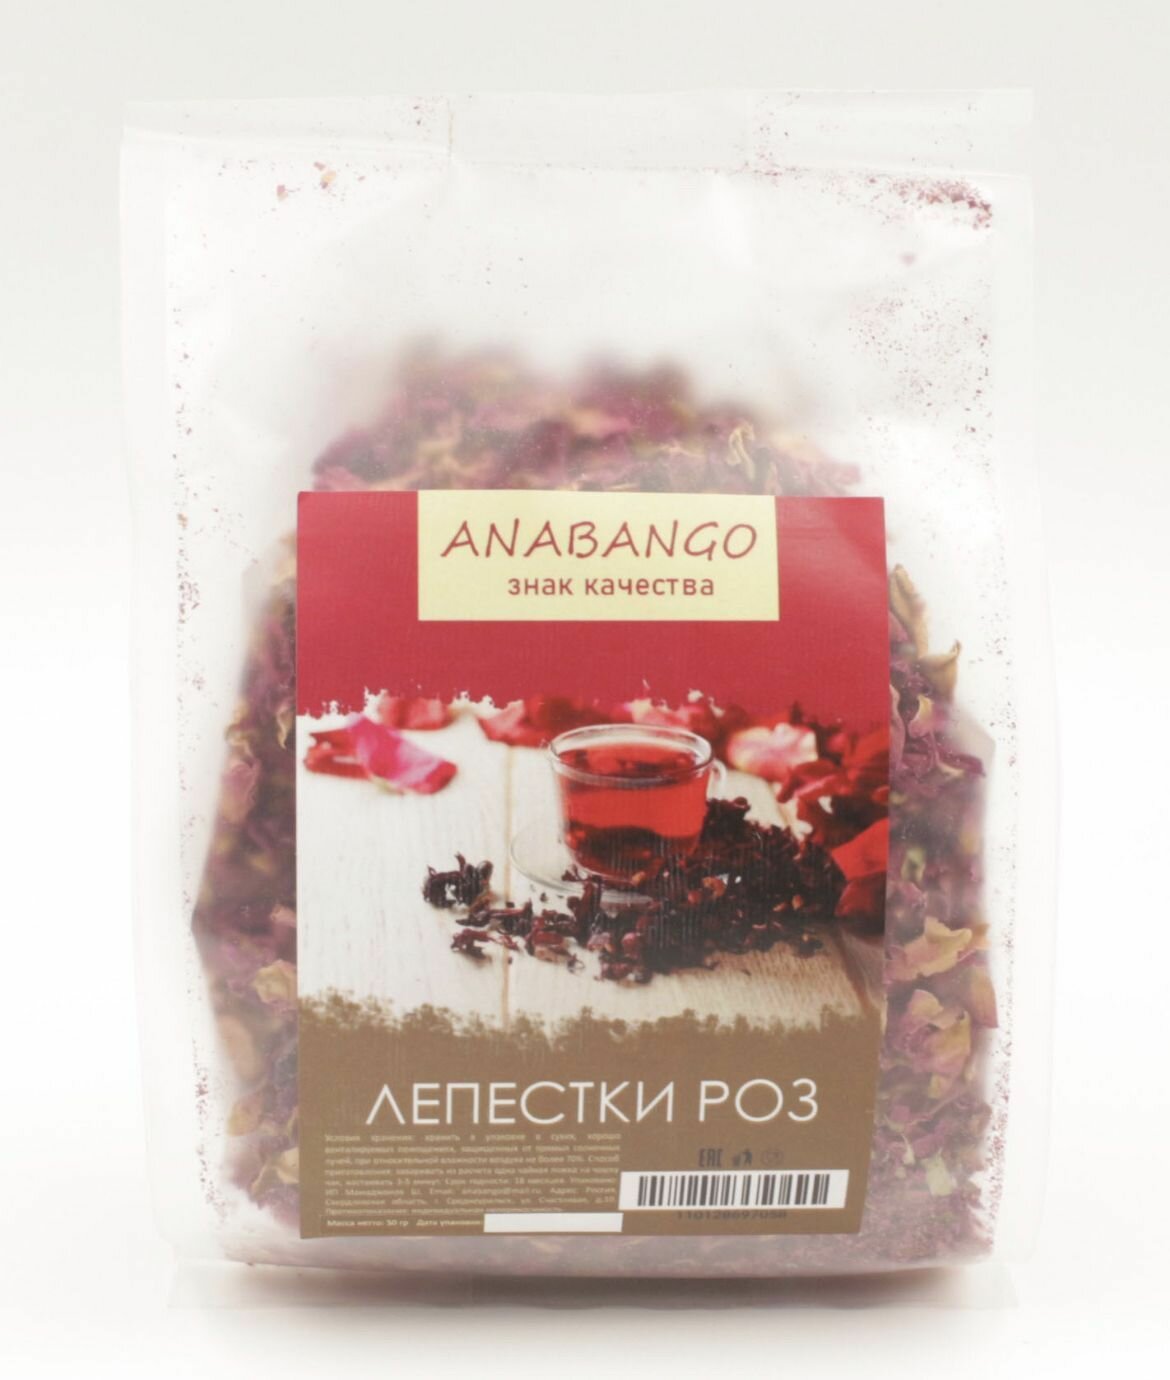 Лепестки роз сушеные ANABANGO 50г